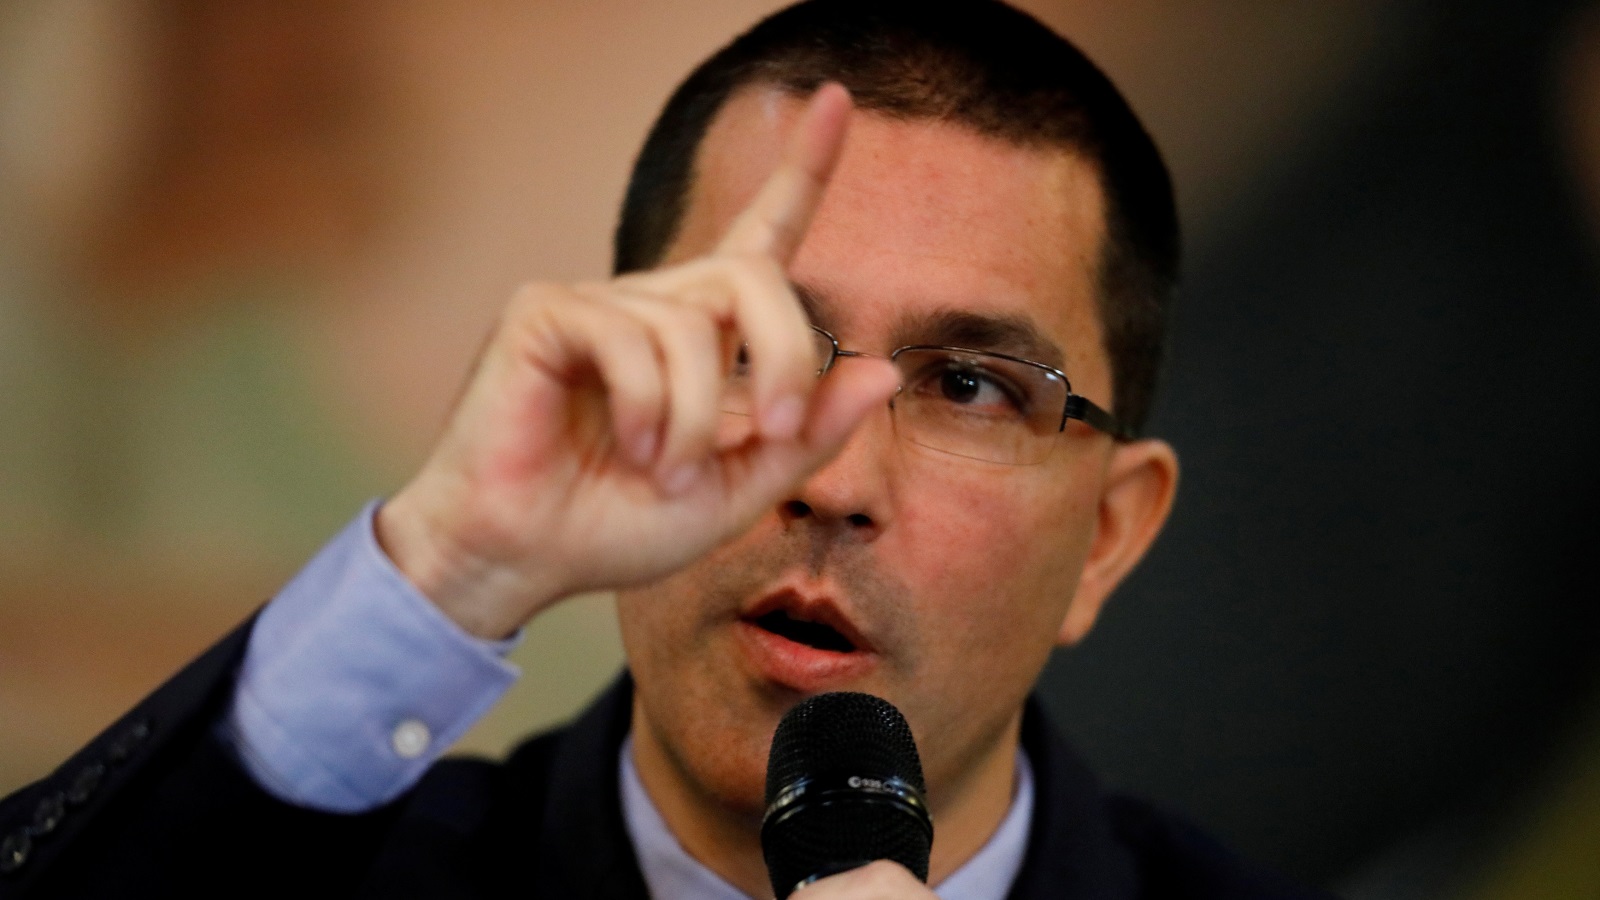 وزير خارجية فنزويلا: تهديدات ترمب وقحة وتدفع باتجاه زعزعة الاستقرار (رويترز)